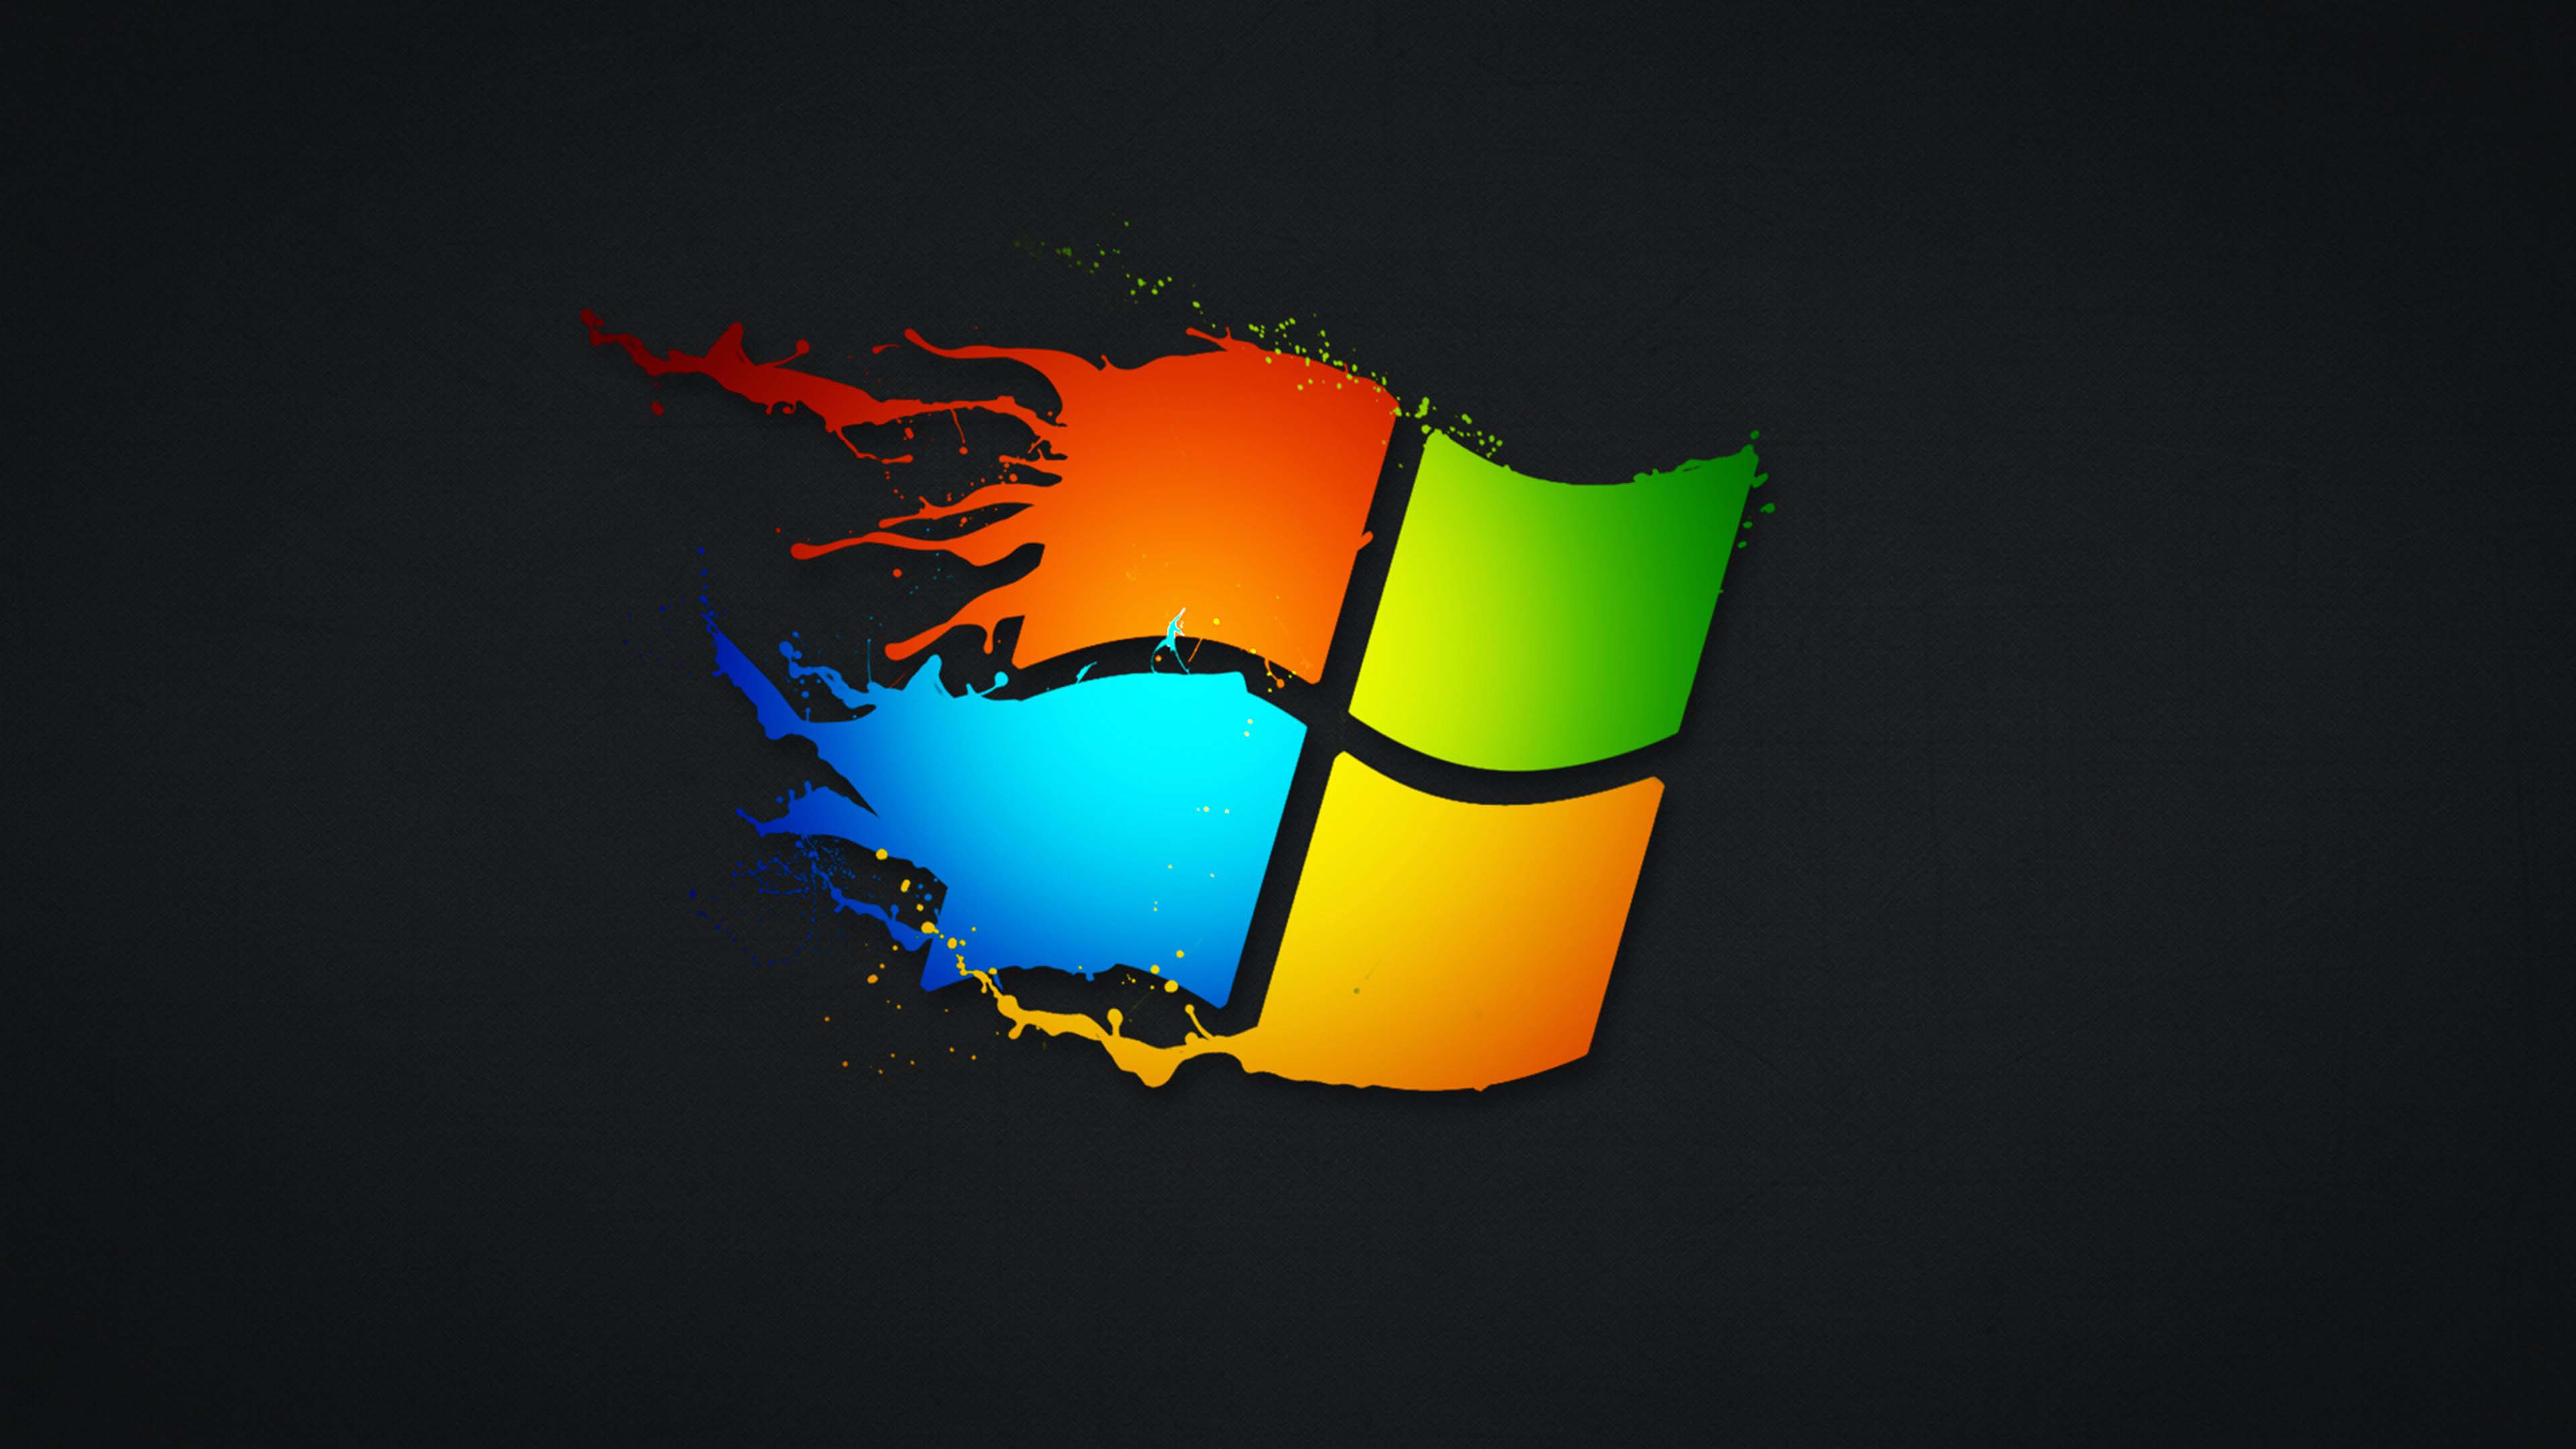 Tổng hợp 50+ hình nền win 10 đẹp nhất - Hình nền máy tính | Windows 10  logo, Wallpaper windows 10, Windows 10